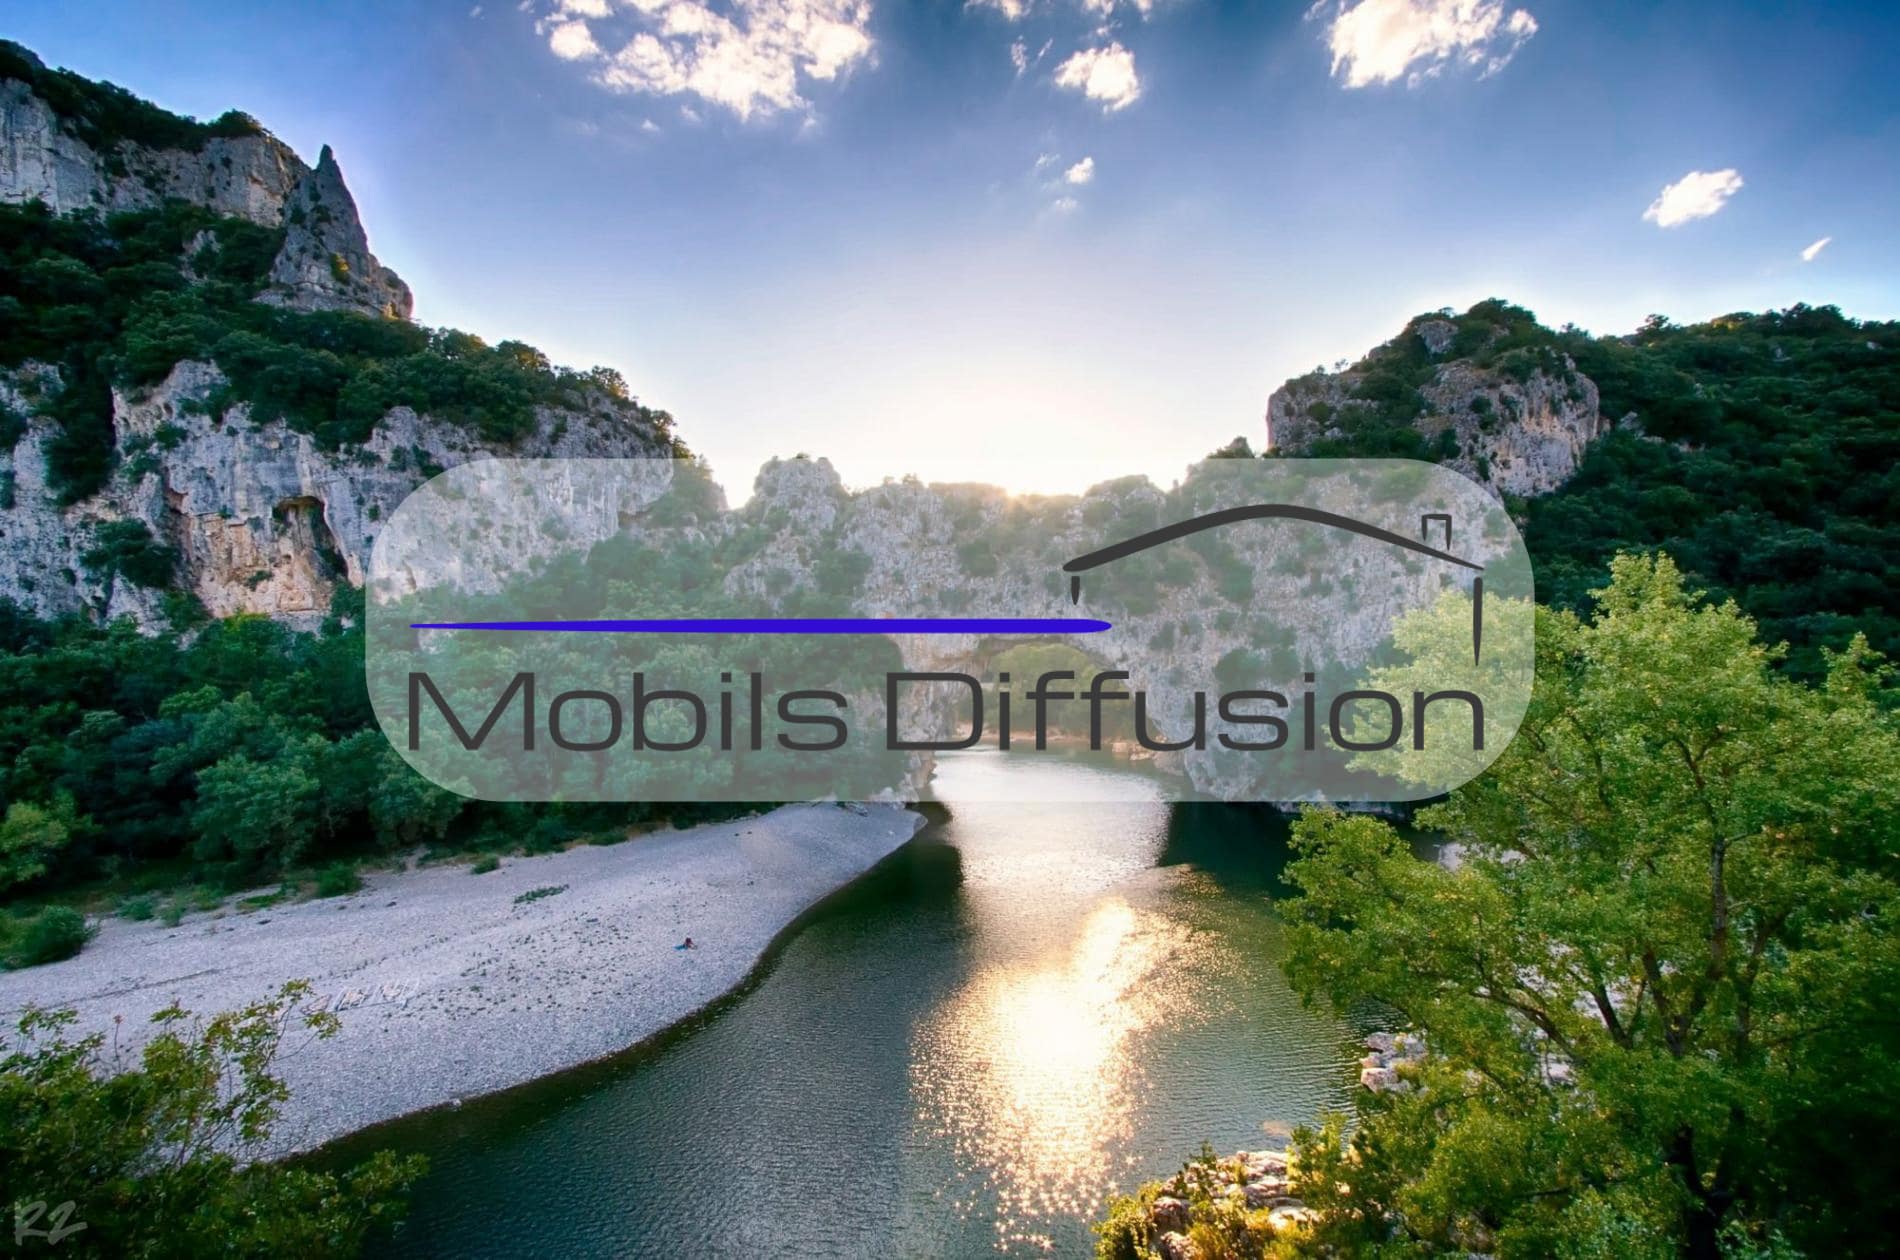 Mobils Diffusion - Terrain pour mobil-home au camping Auvergne-Rhône-Alpes près des gorges de l’Ardèche